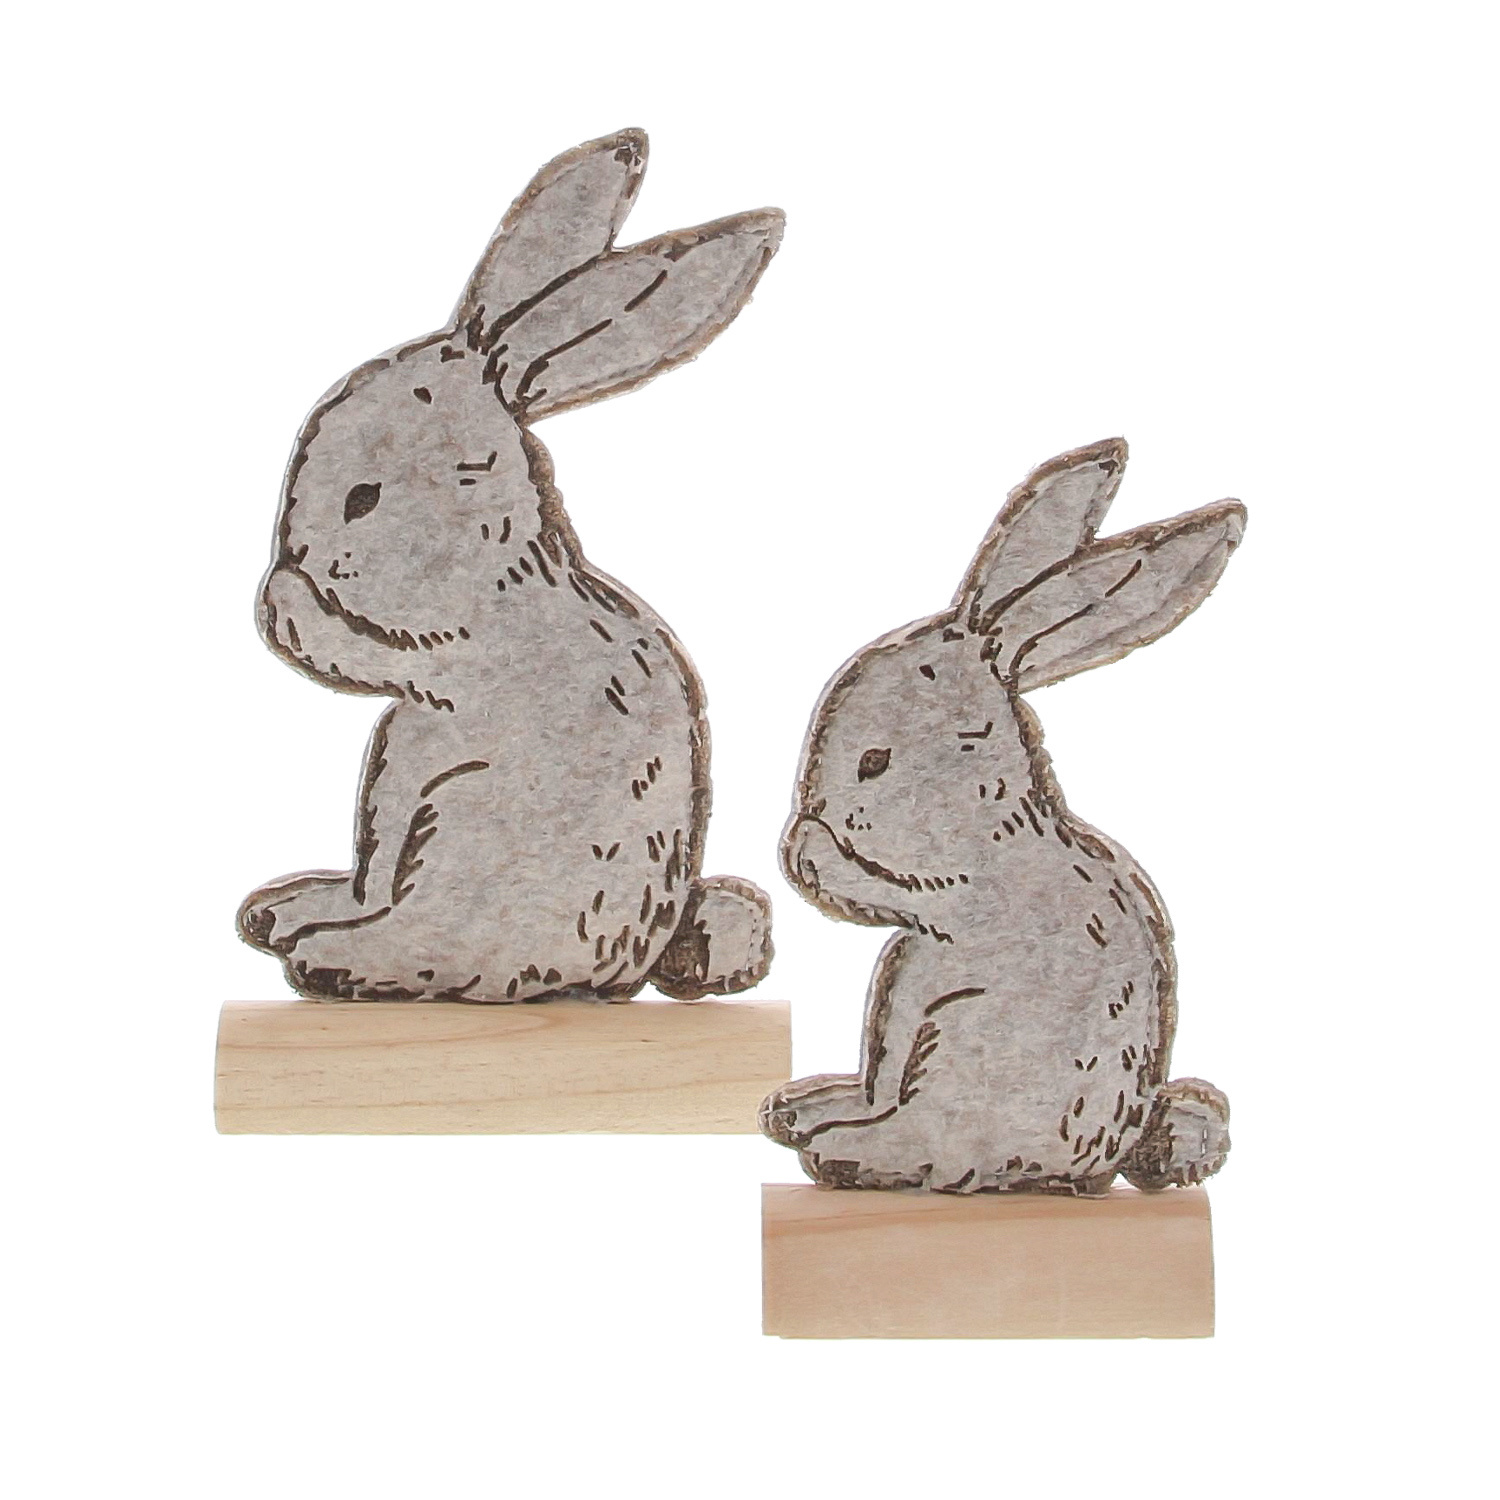 Bunny "Cute" konijn deco staand 3 sets van 2 stuks - 130*48*230 mm